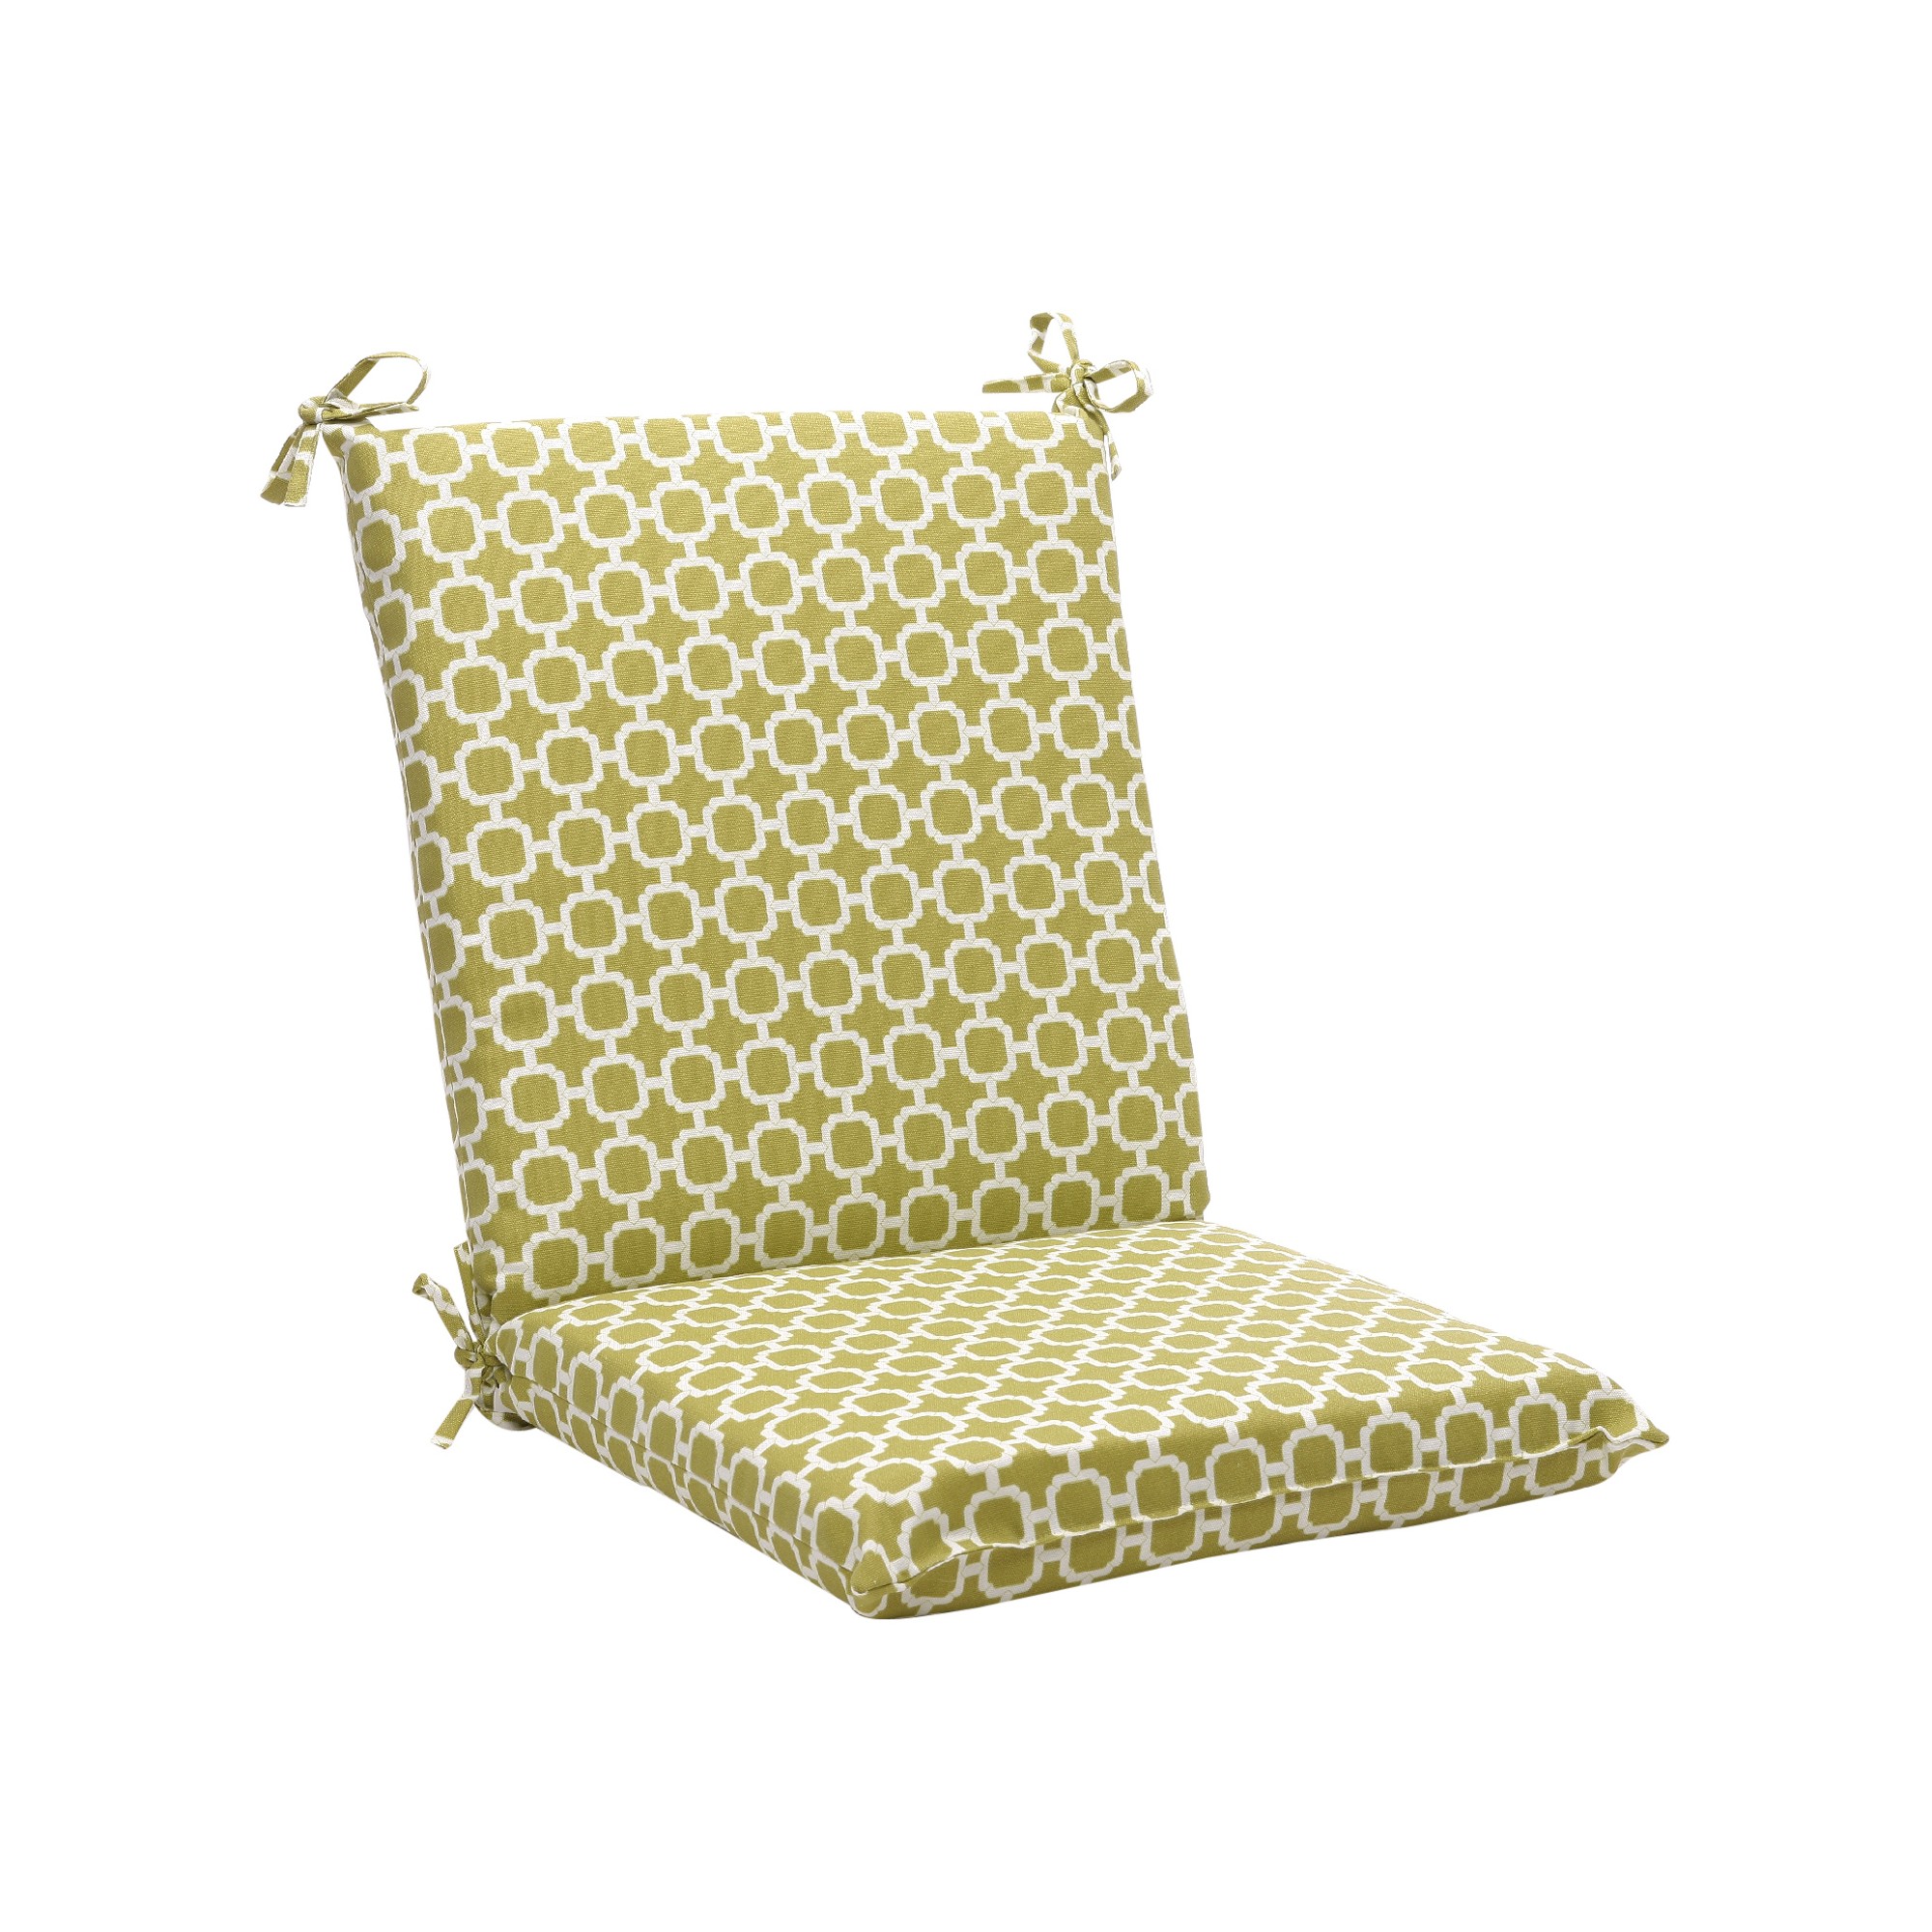 Outdoor Chair Cushion - Green/White Geometric